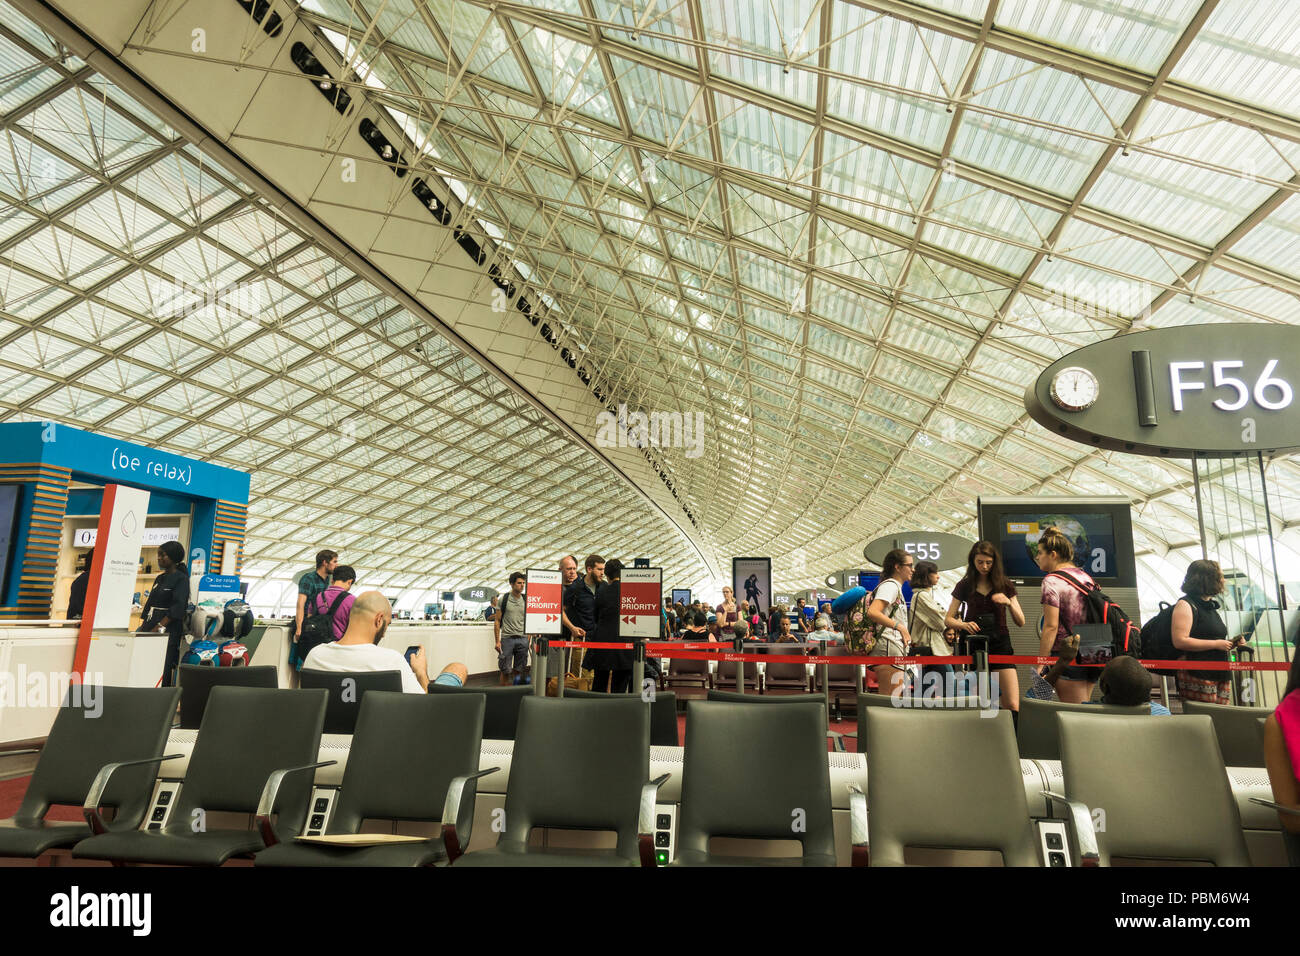 El aeropuerto Charles de Gaulle, terminal de salida ocupado 2f, f, París, Francia. Foto de stock